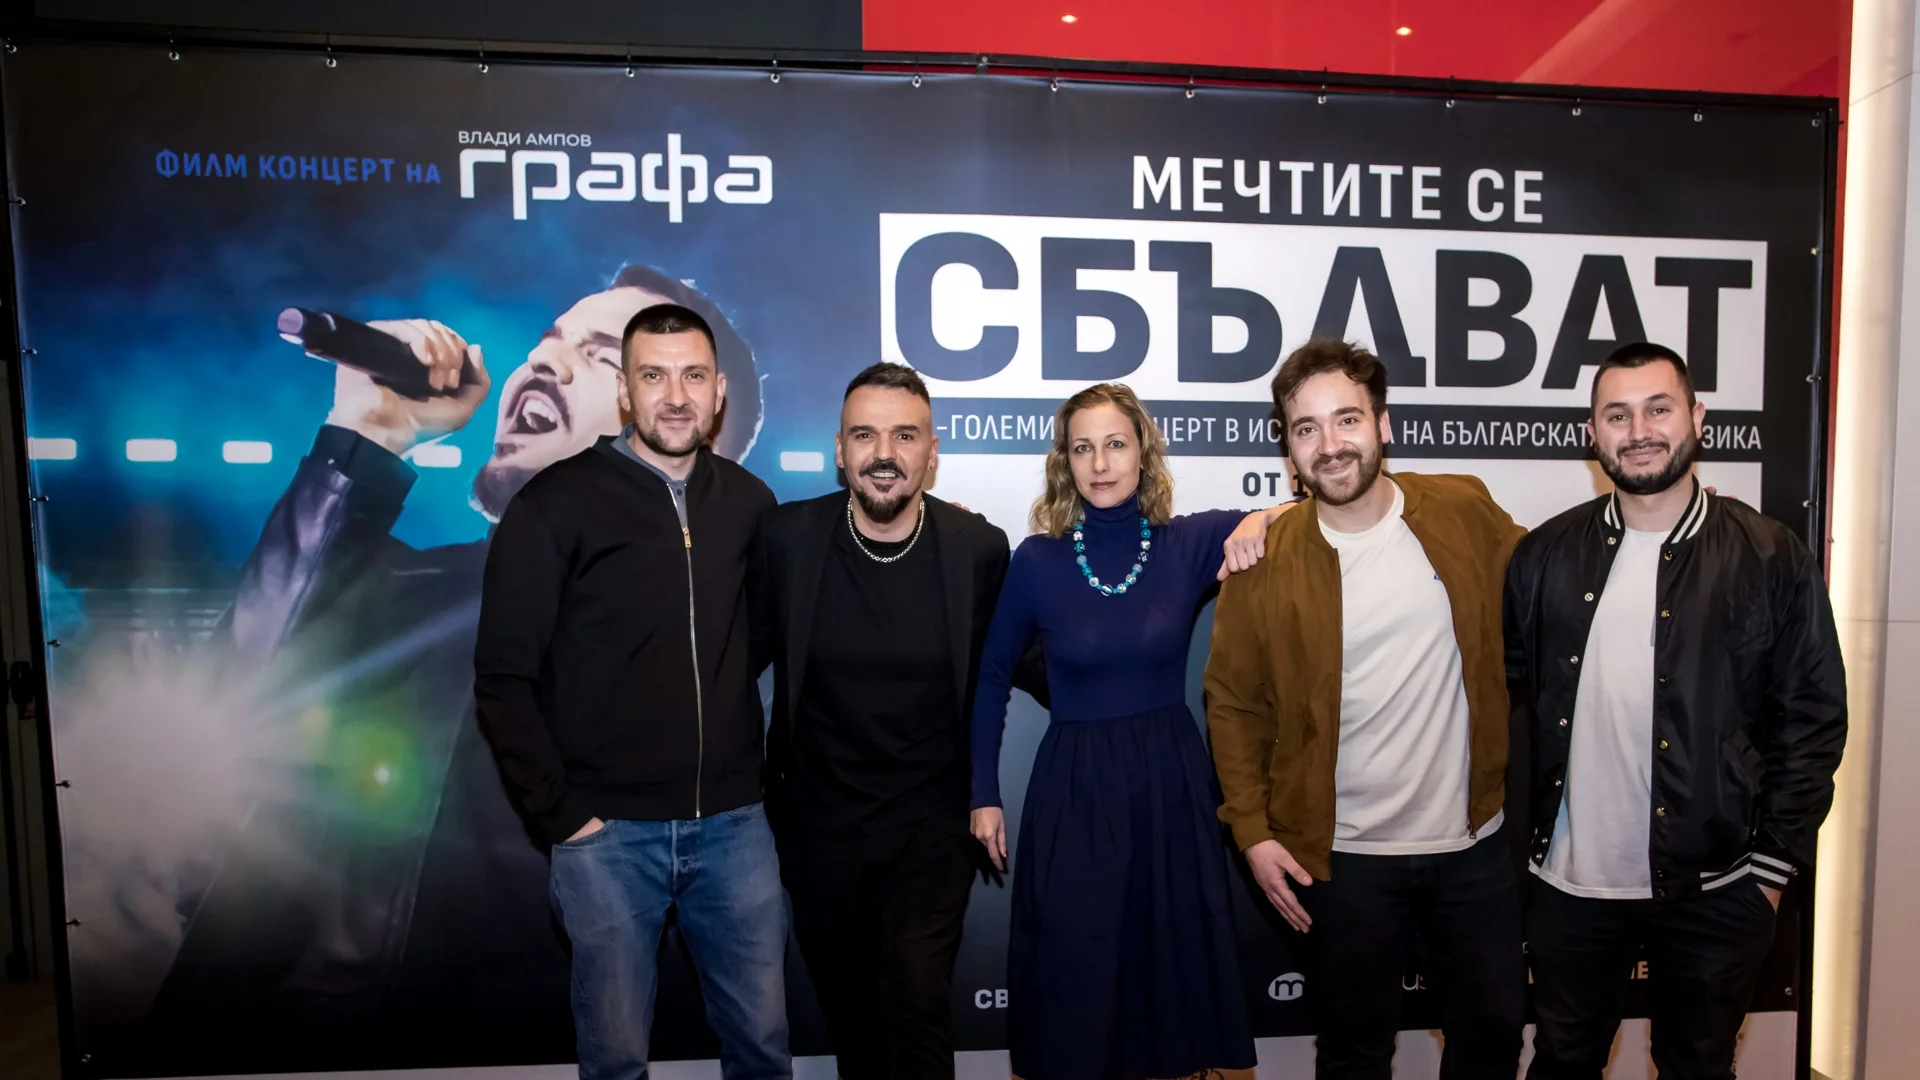 Гала прожекцията на първия български концертен филм "Мечтите се сбъдват" предизвика истински фурор